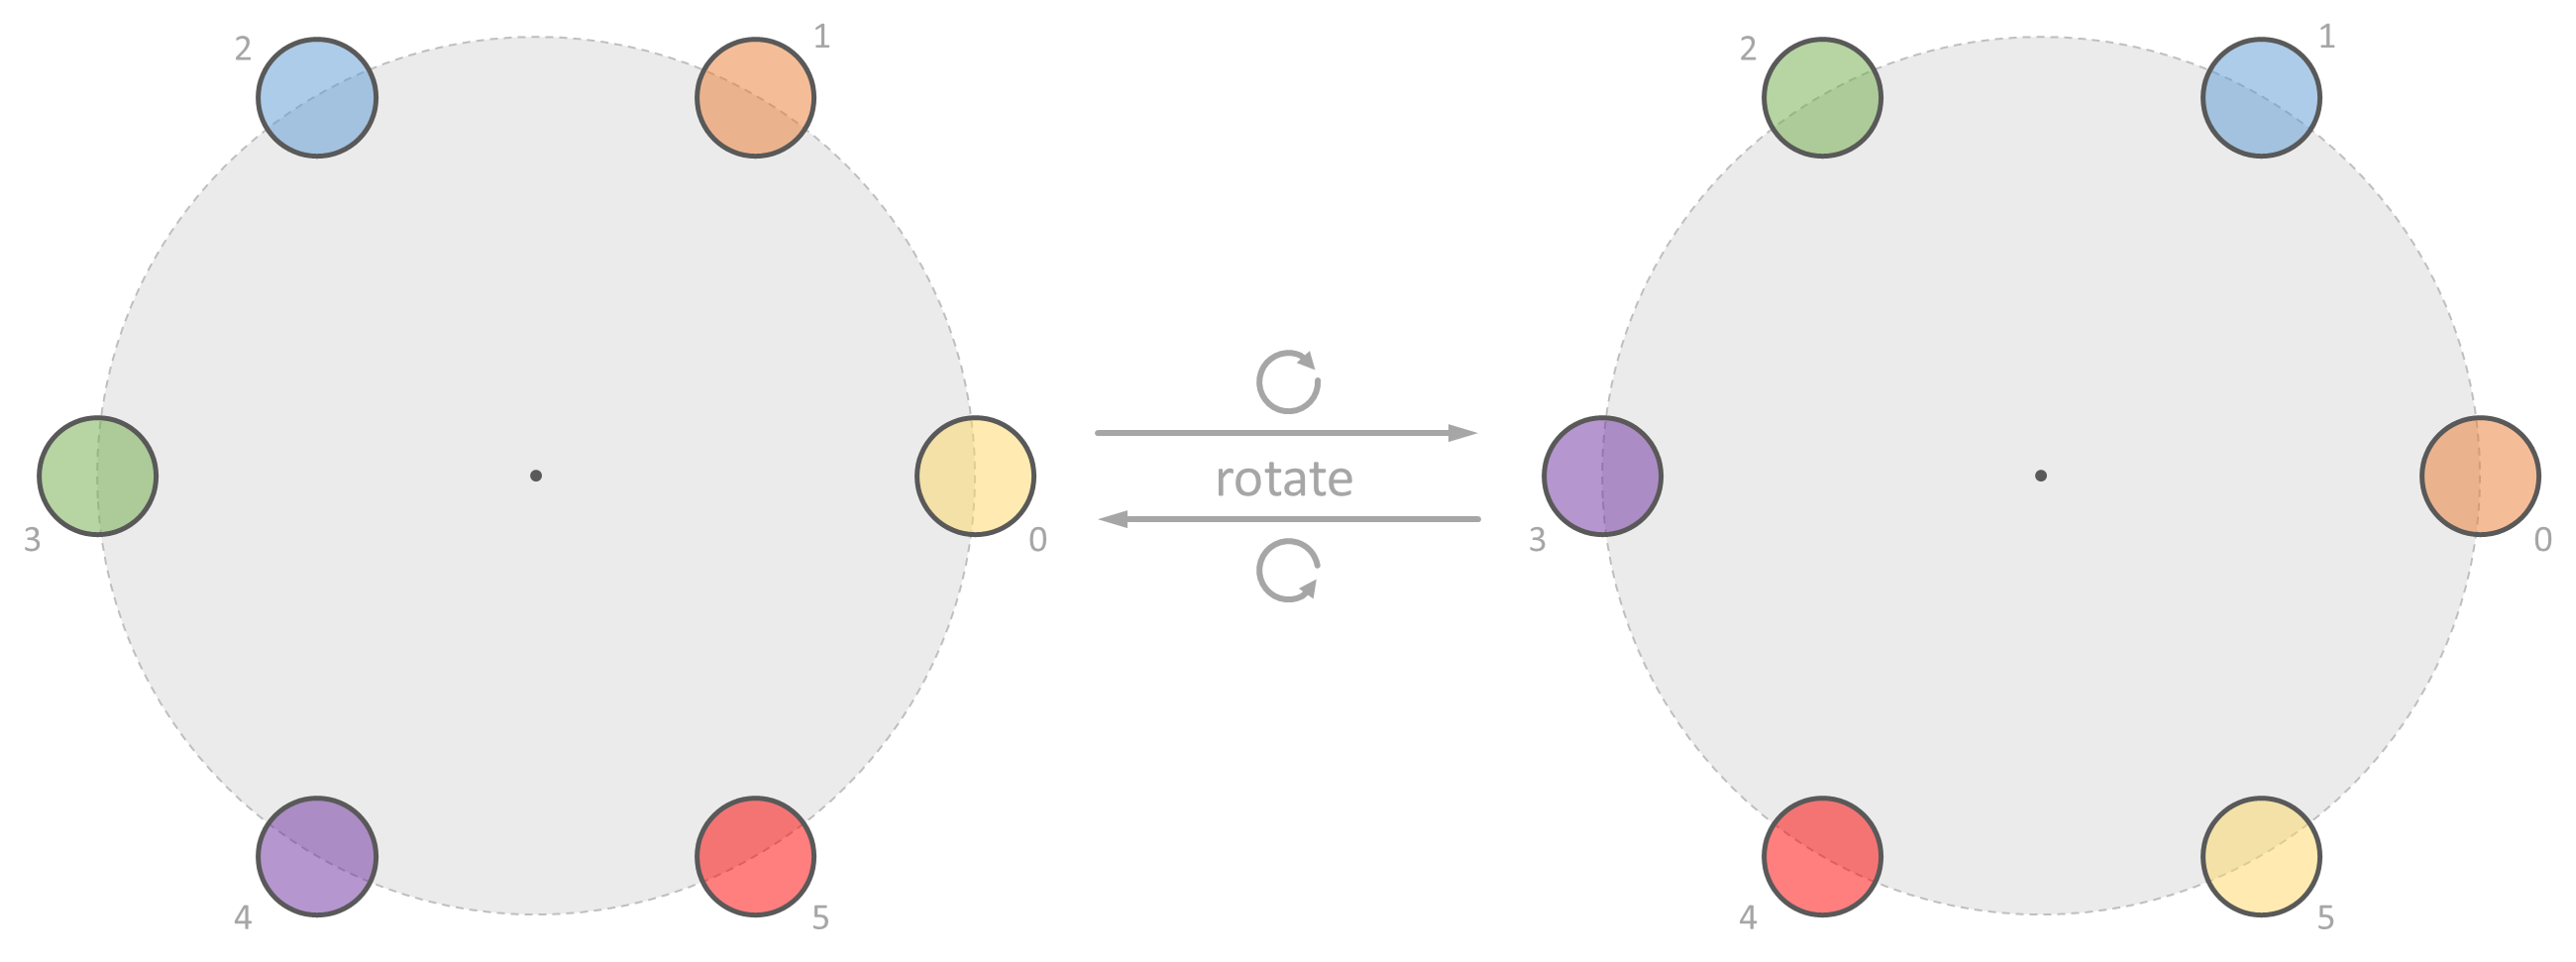 rotation step